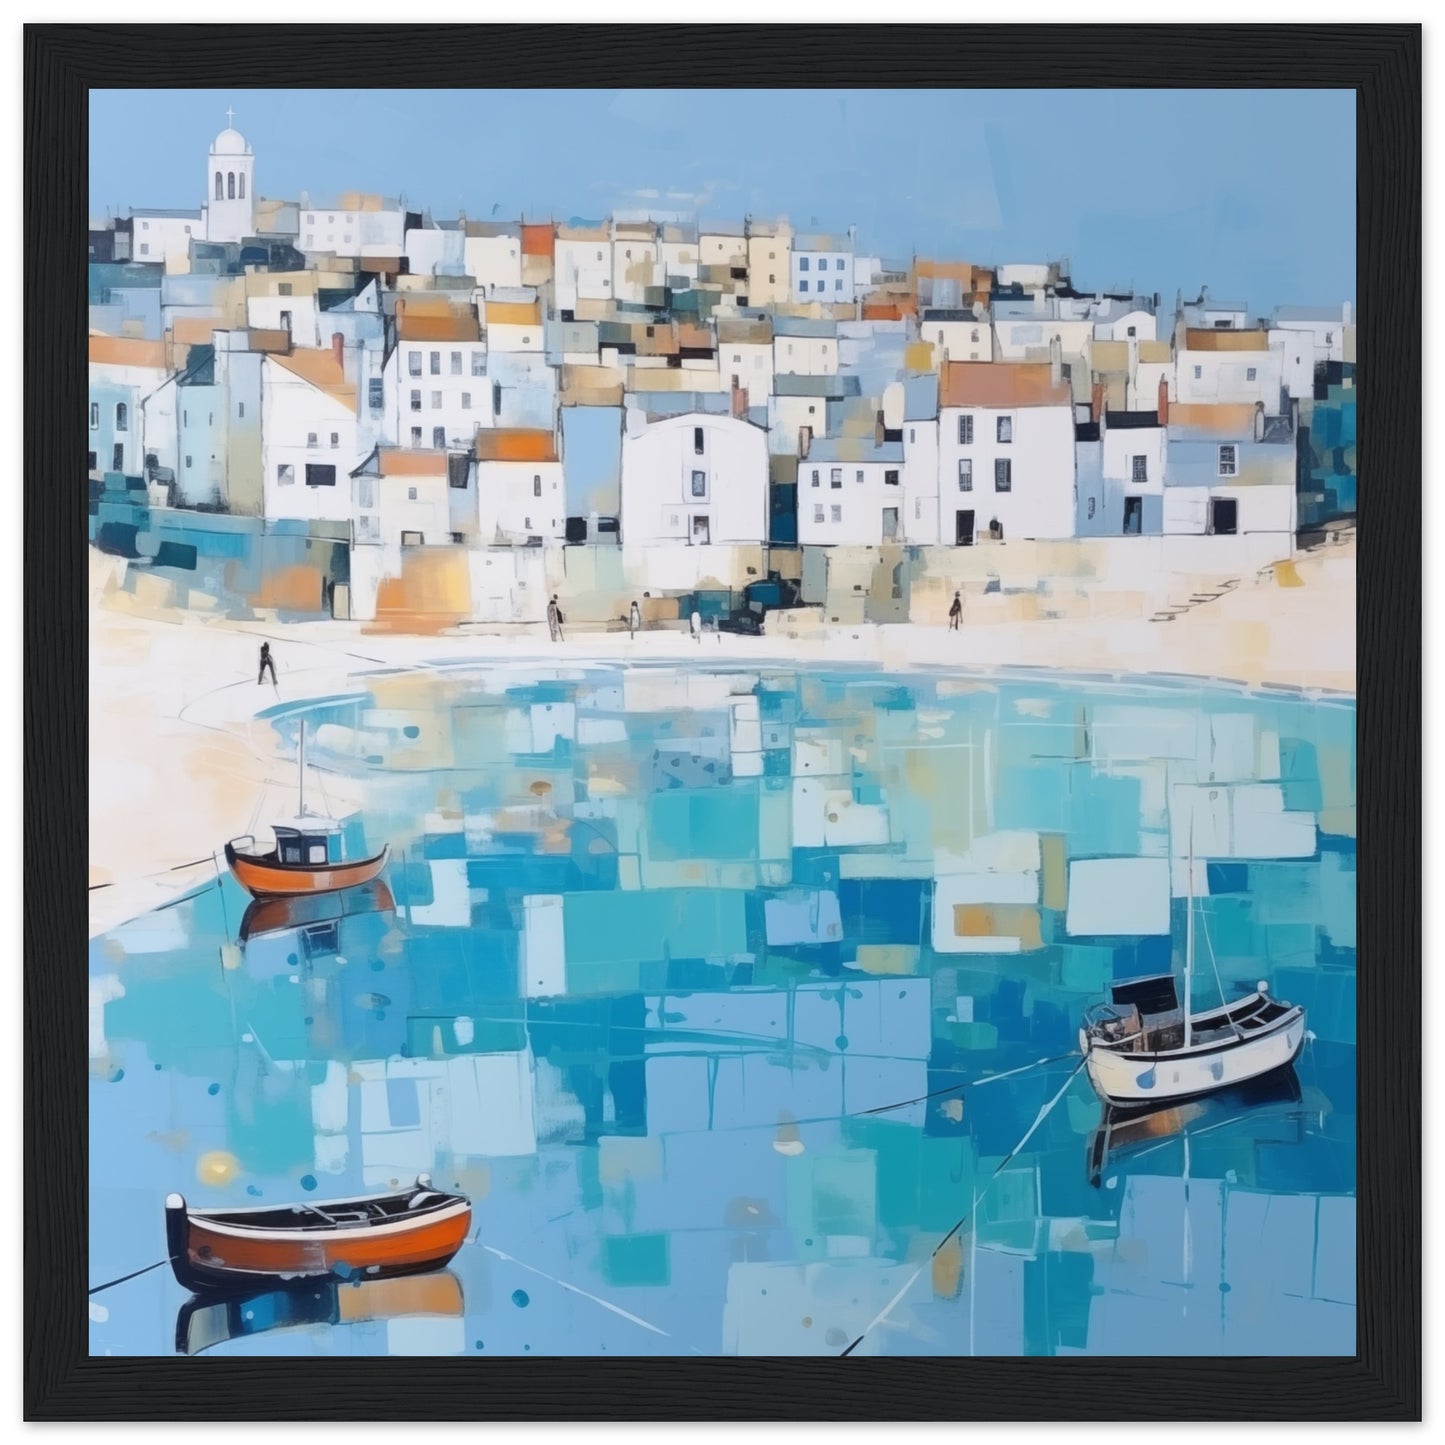 St Ives Seascape Artwork - Print Room Ltd White frame 50x50 cm / 20x20"